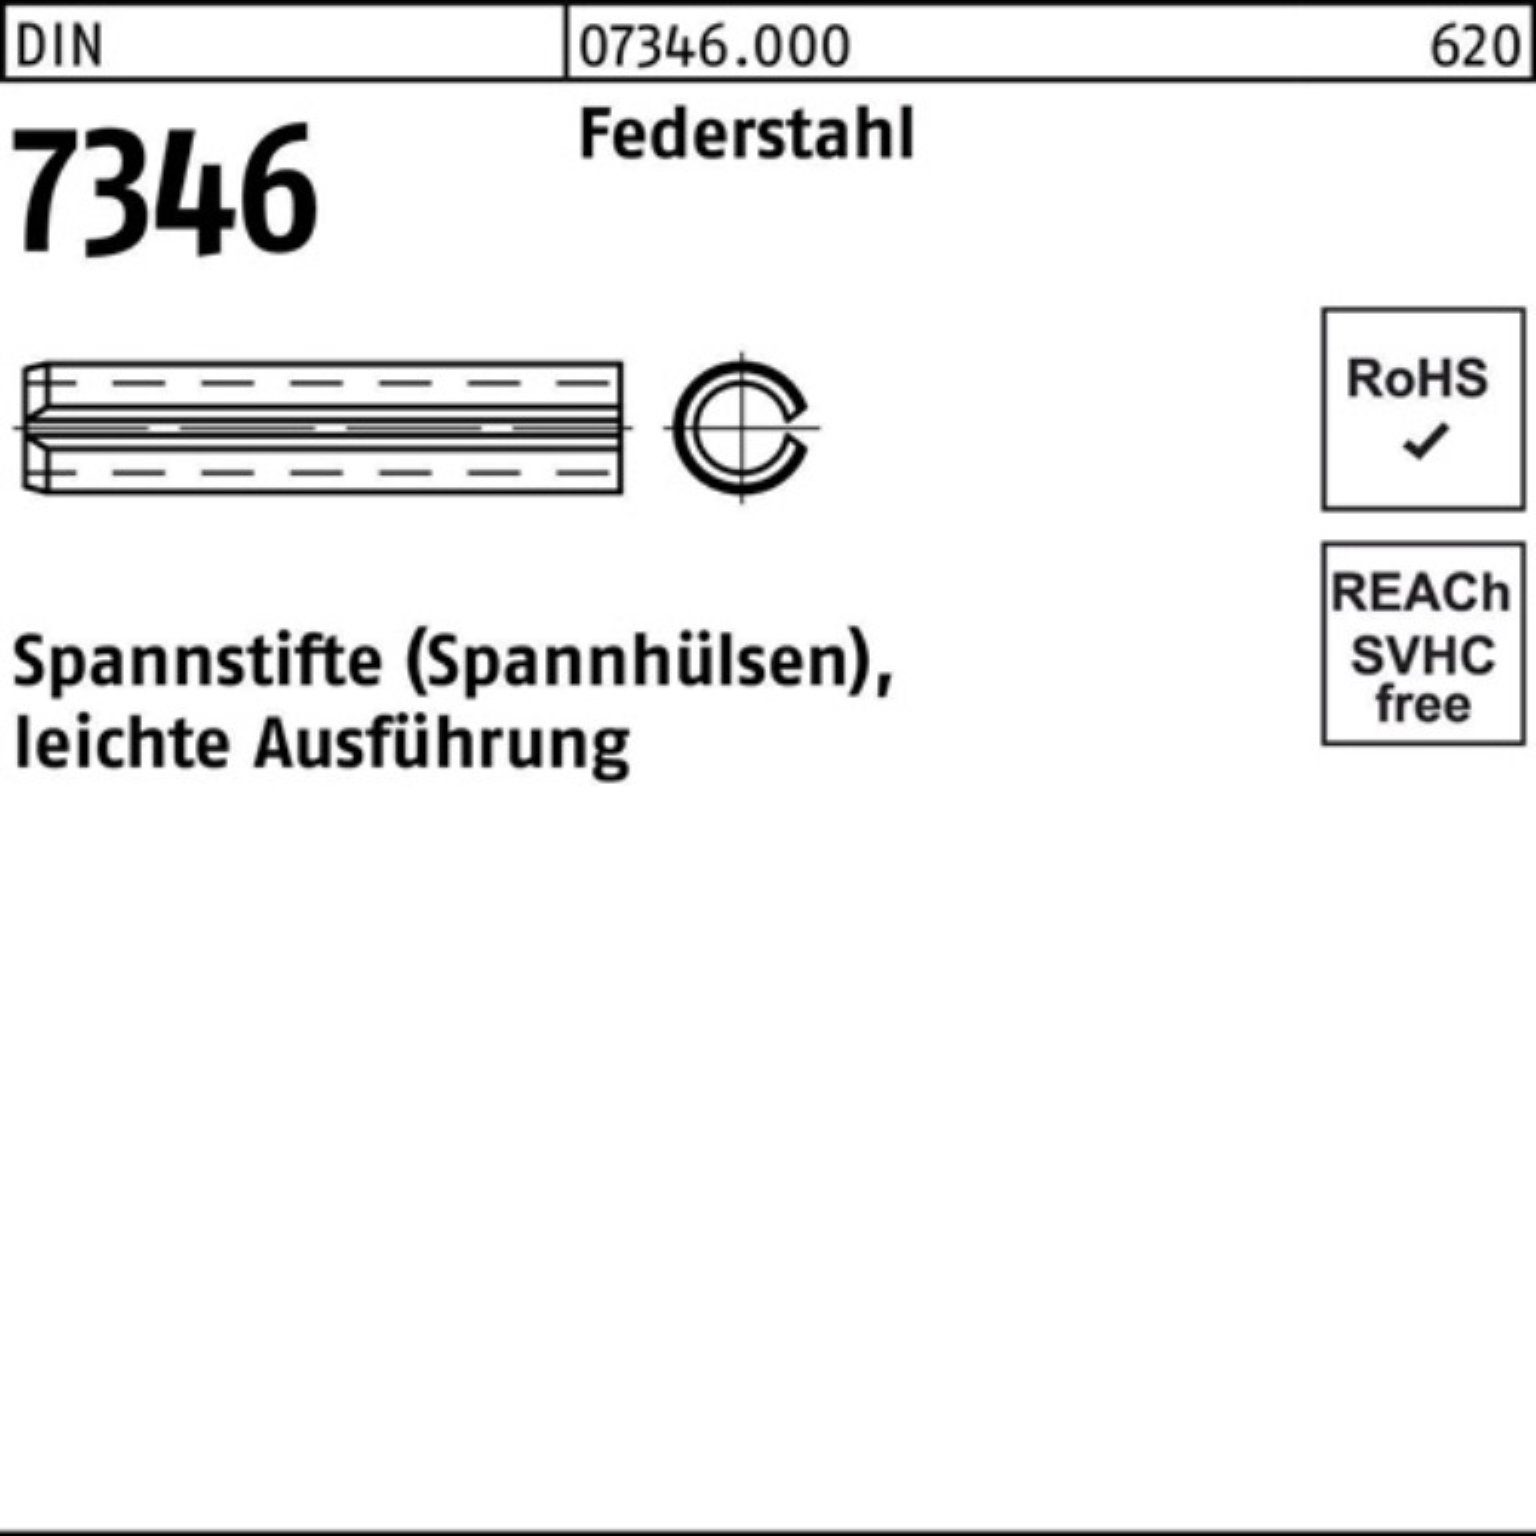 22 Pack 5x Reyher DIN Federstahl Ausf 100er 7346/ISO Spannstift 13337 Spannstift leichte